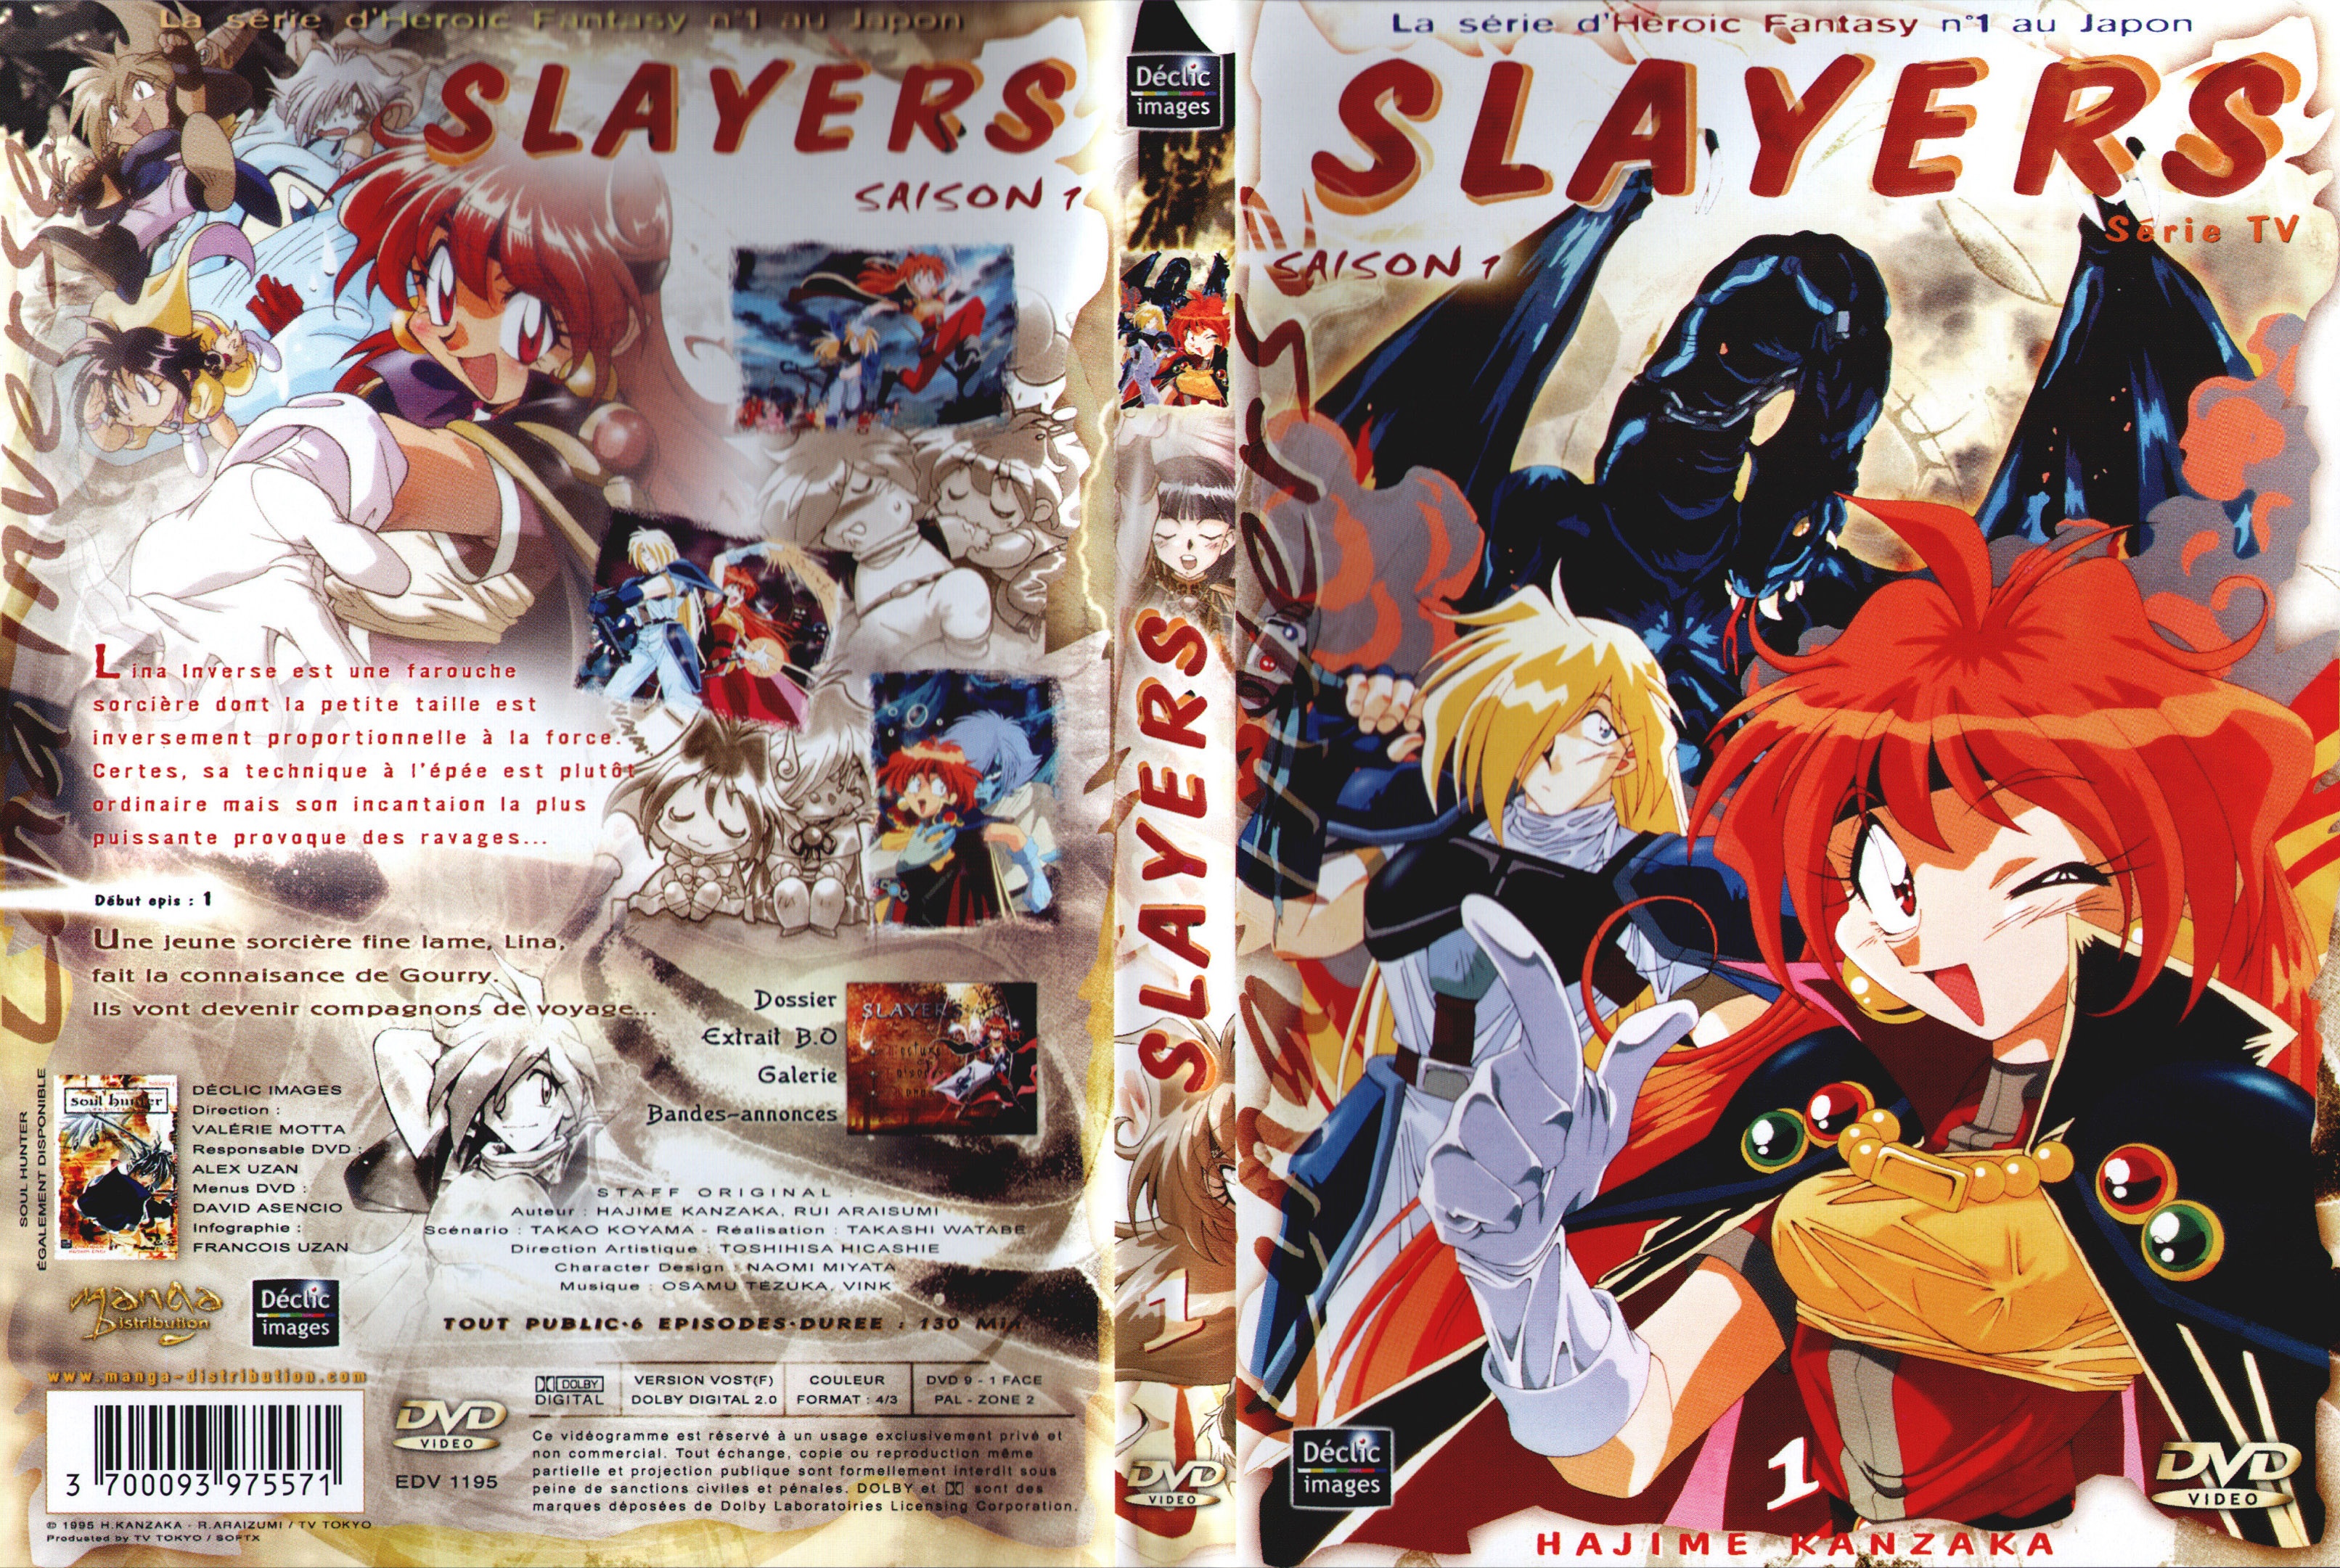 Jaquette DVD Slayers saison 1 DVD 1